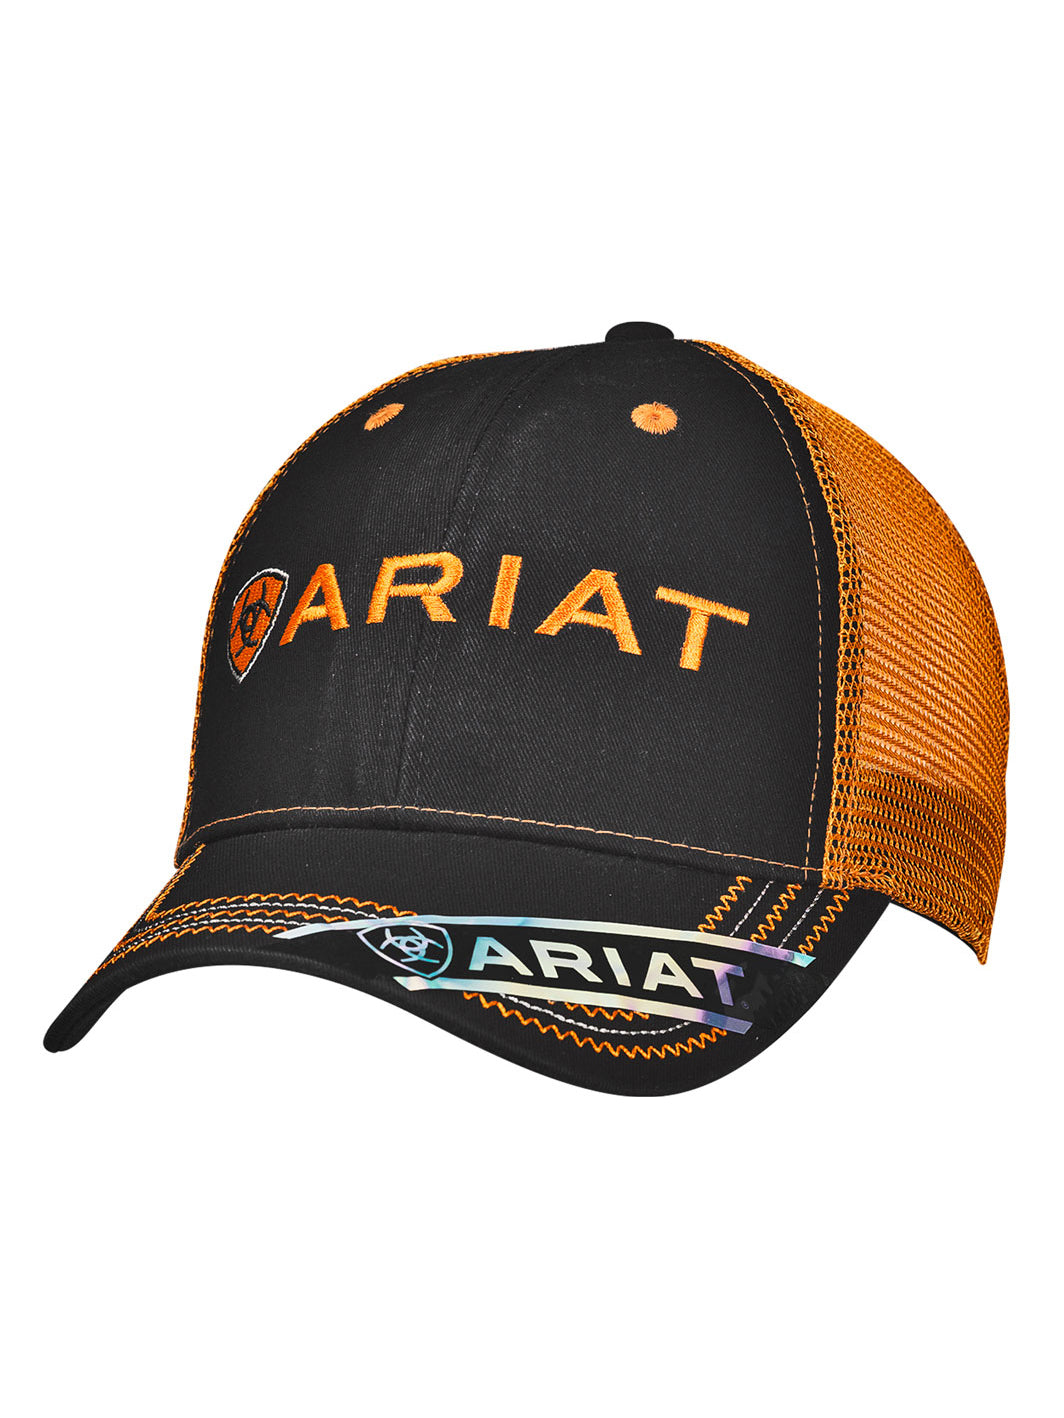 Ariat 15160276 Black and Orange Cap Front View